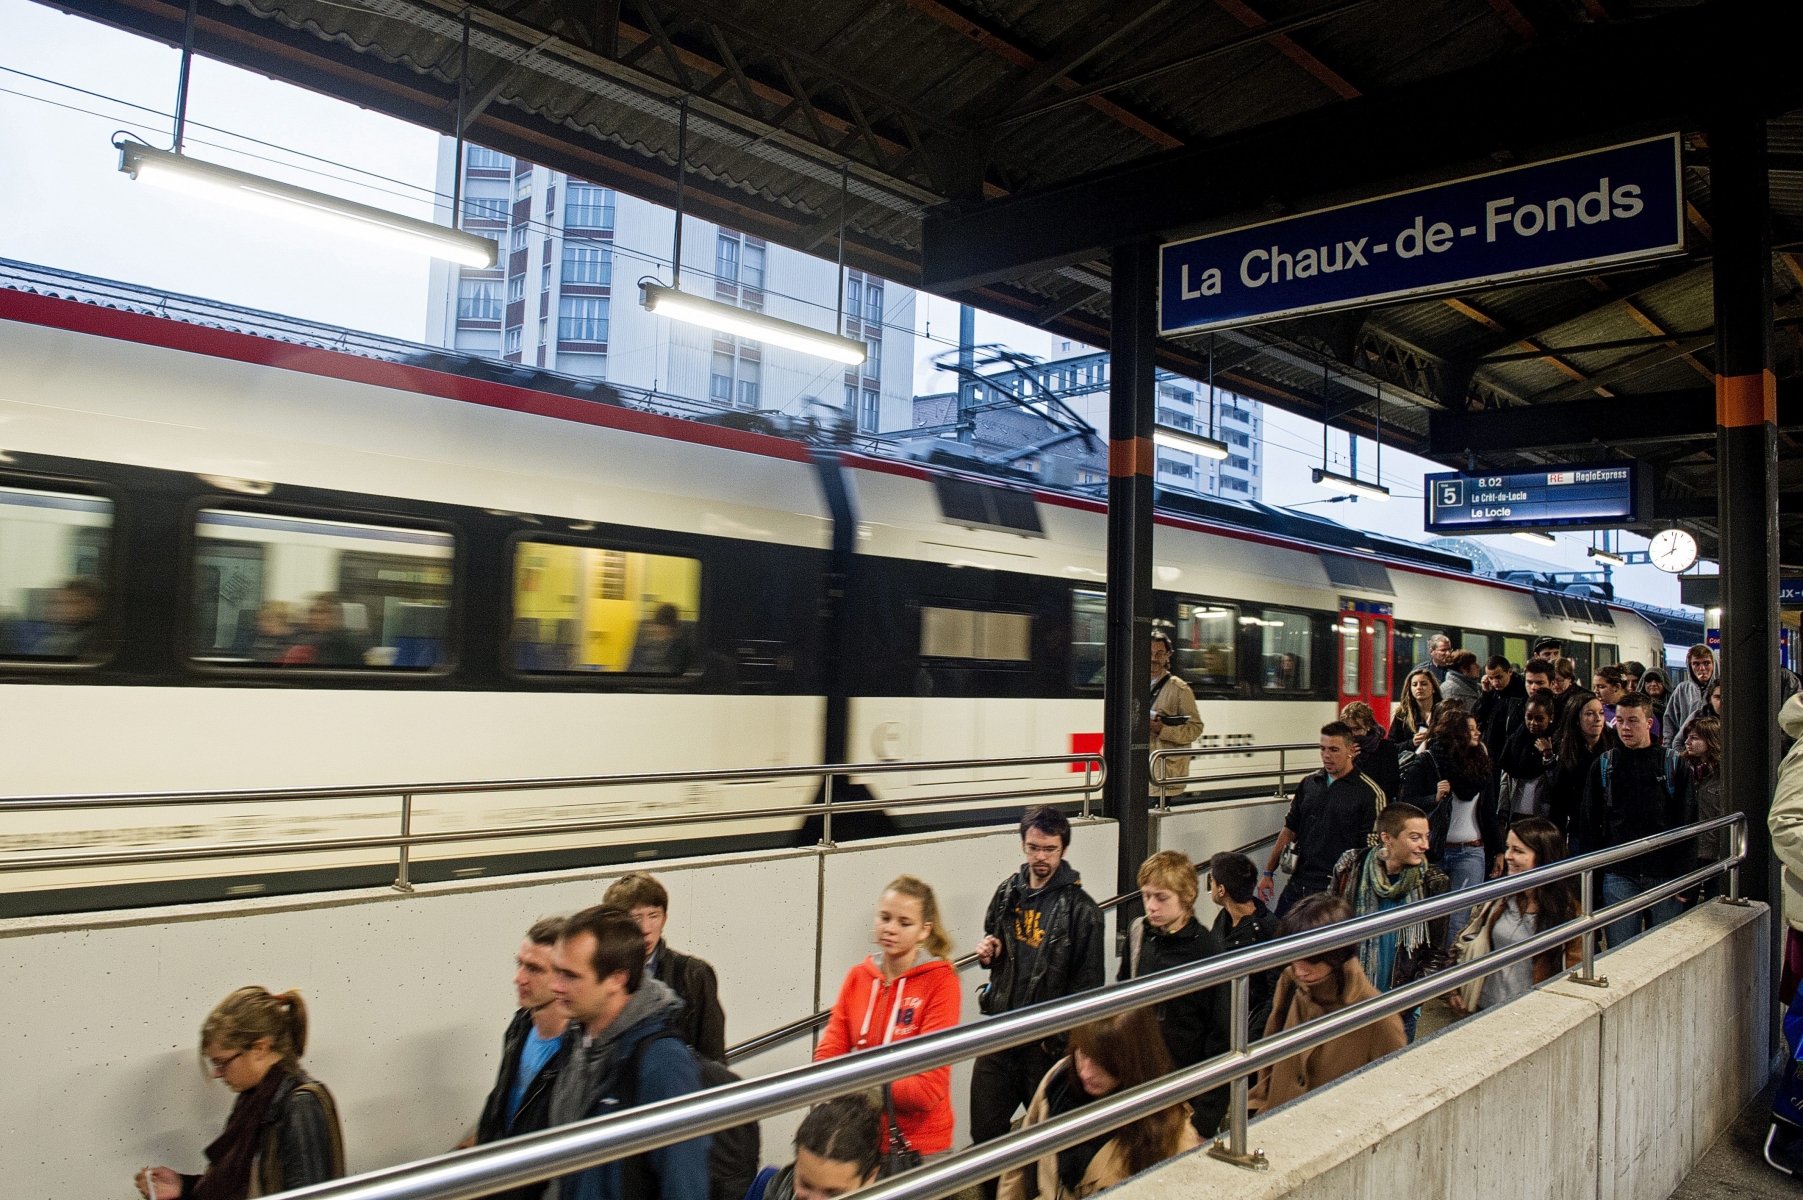 le RER Transrun vient d'etre refuse par la population.
reactions dans le train entre neuchatel et la chaux-de-fonds

Gare la Chaux-de-Fonds, 24 09 2012
Photo David Marchon LA CHAUX-DE-FONDS